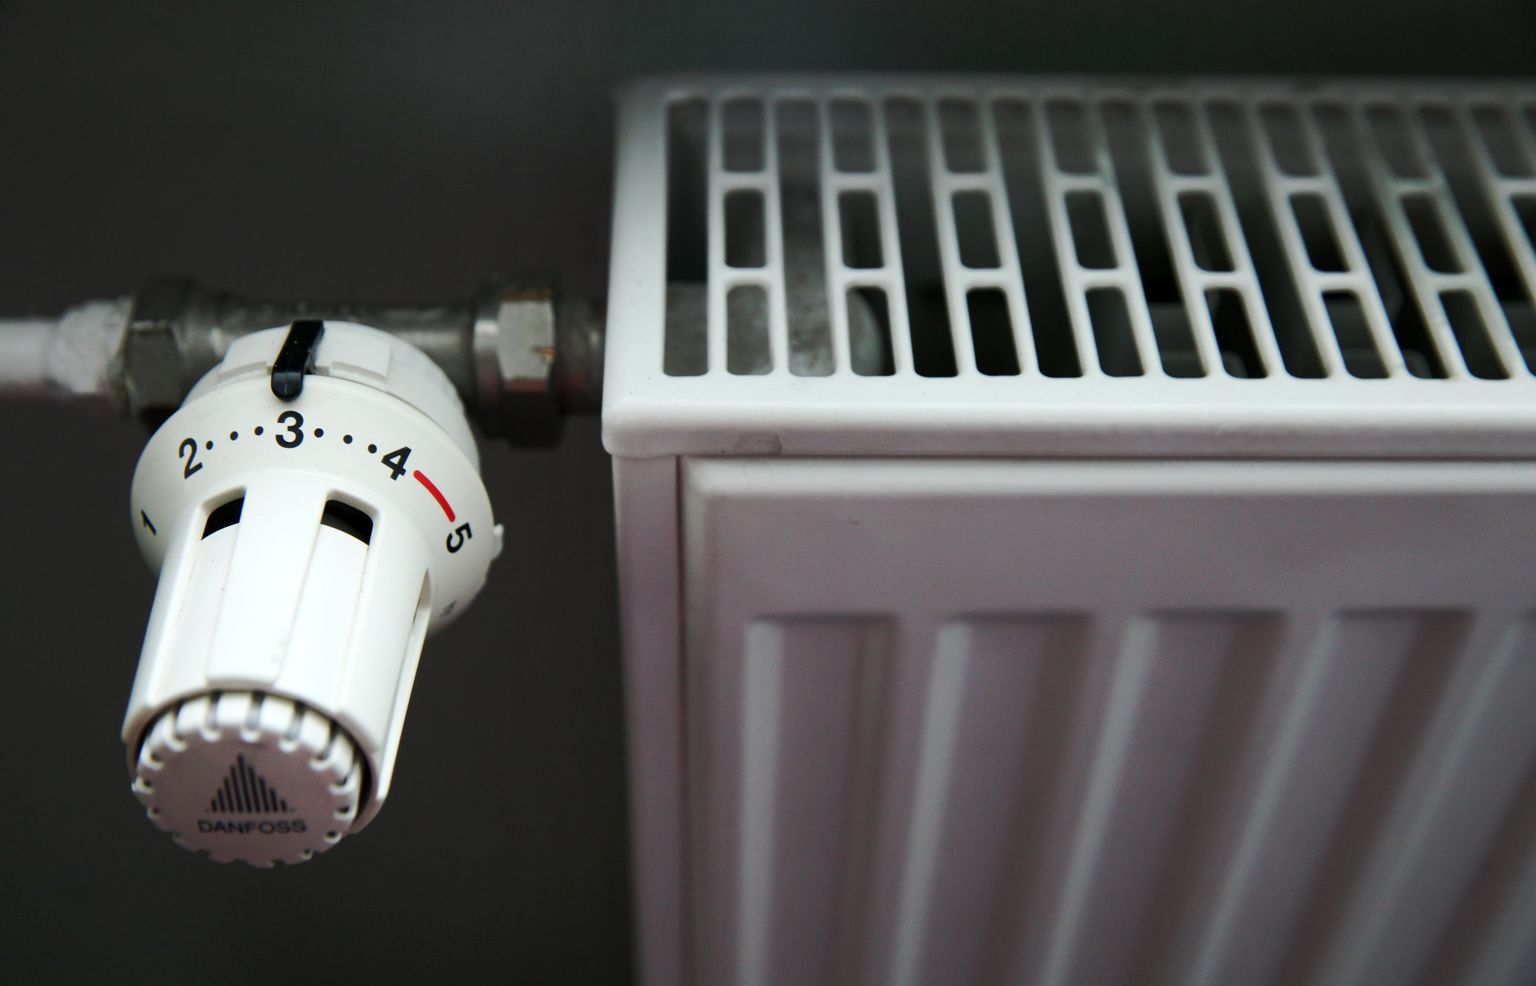 Радиатор отопления. Иллюстративное фото